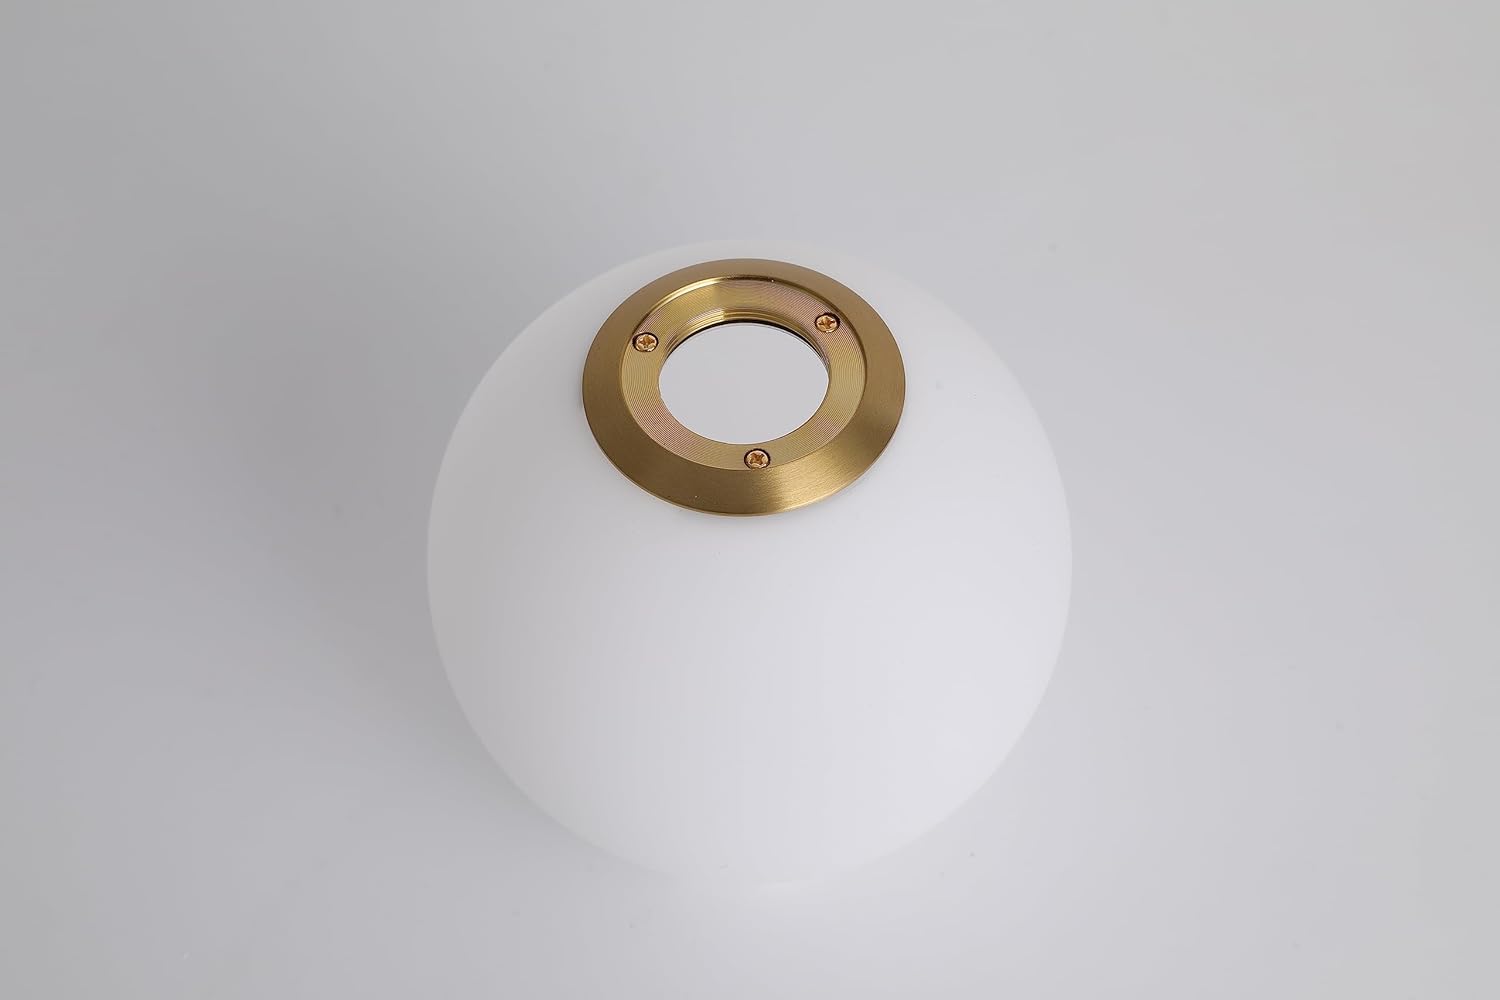 Hdc 1 Light Modern Led Gold Frosted Ball Pendant Lamp Chandelier Ceiling Light - Warm White - HDC.IN